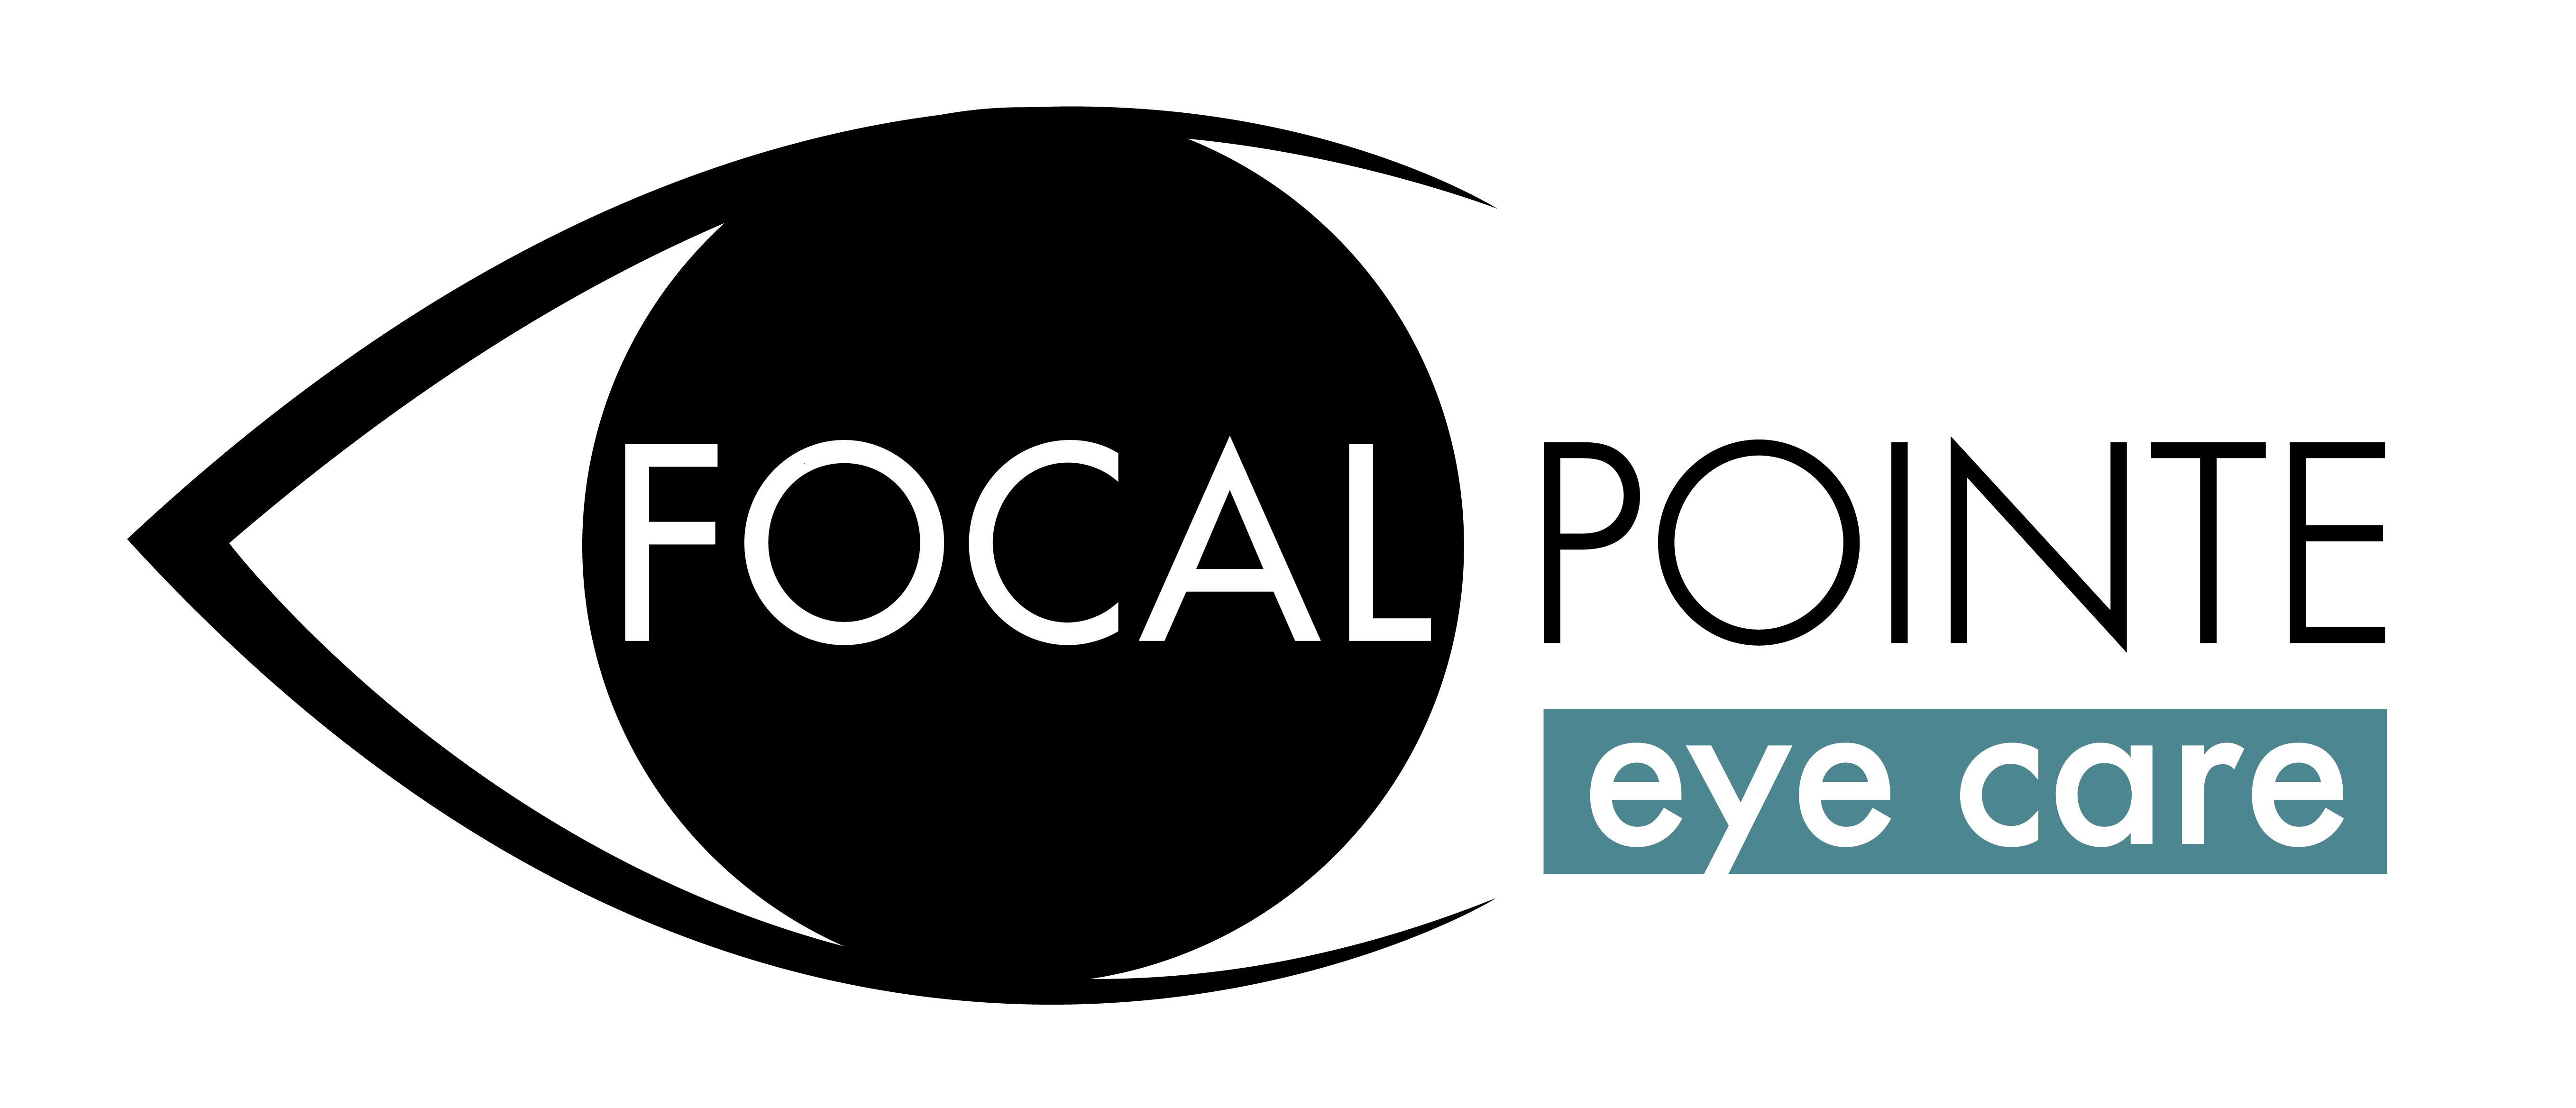 Focal Pointe Eye Care Logo